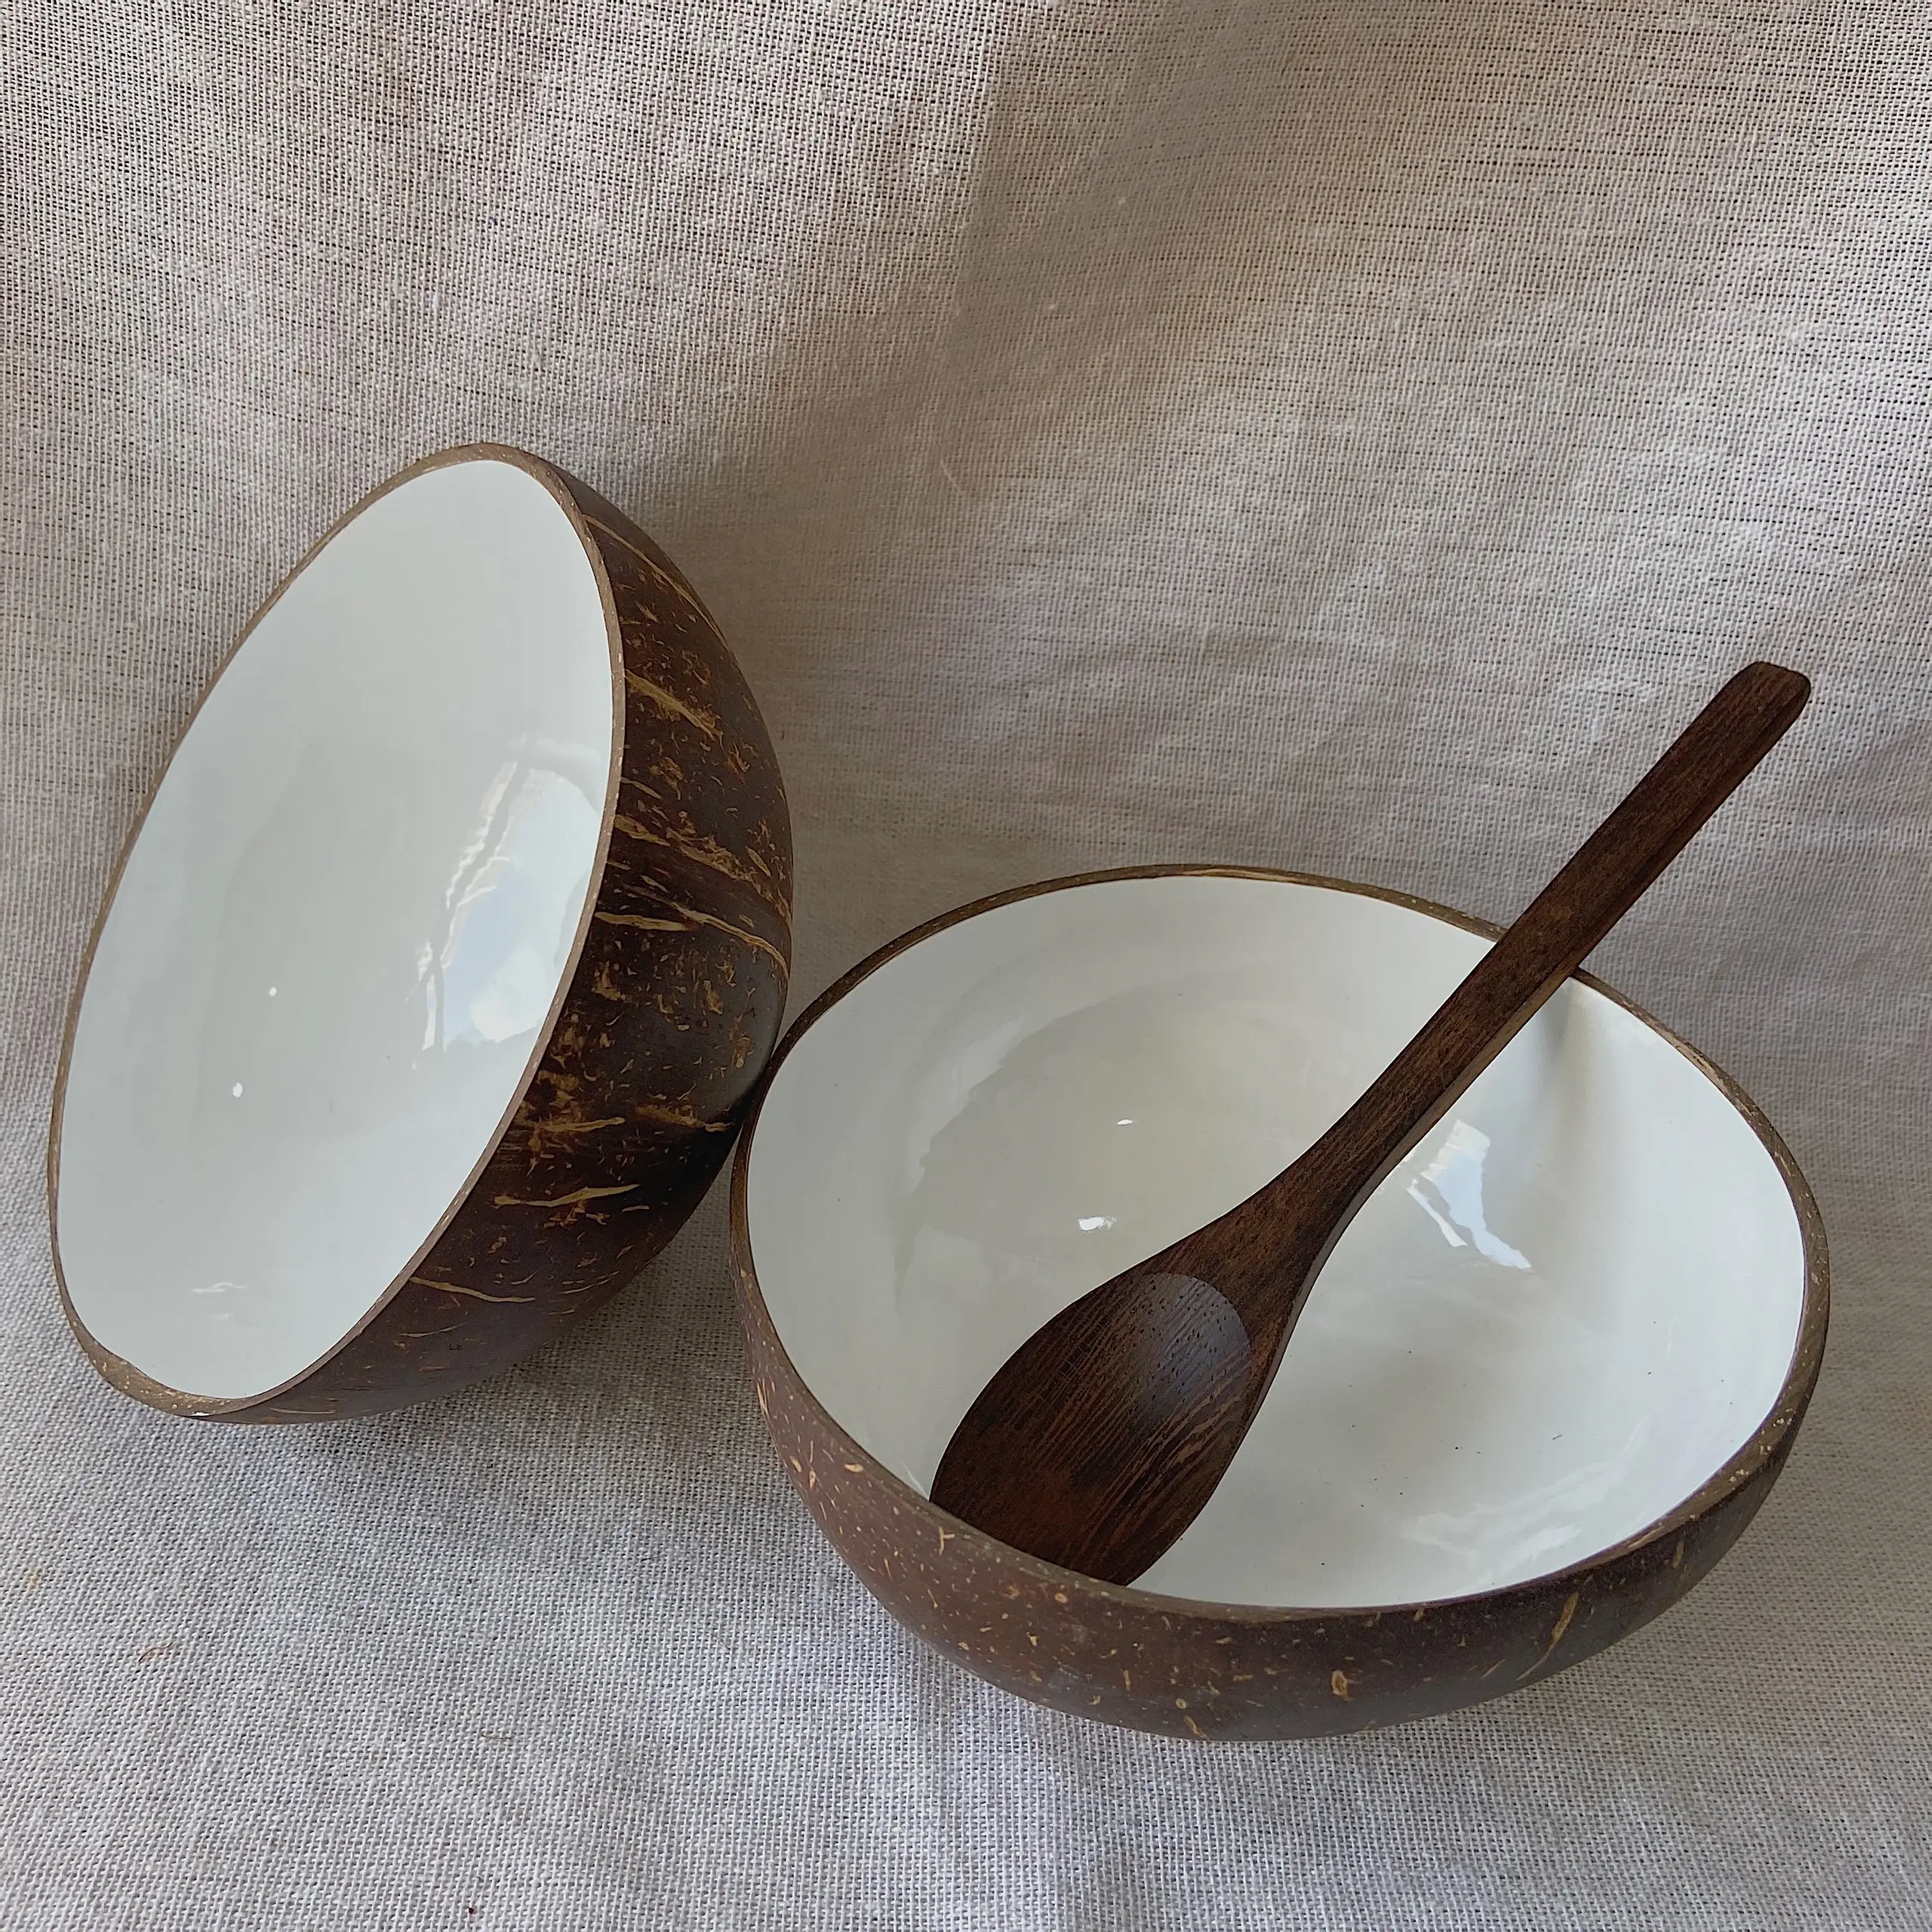 래커 코코넛 쉘 그릇 새로운 도착 래커 코코넛 그릇 홈 장식 또는 기념품 고품질 베트남